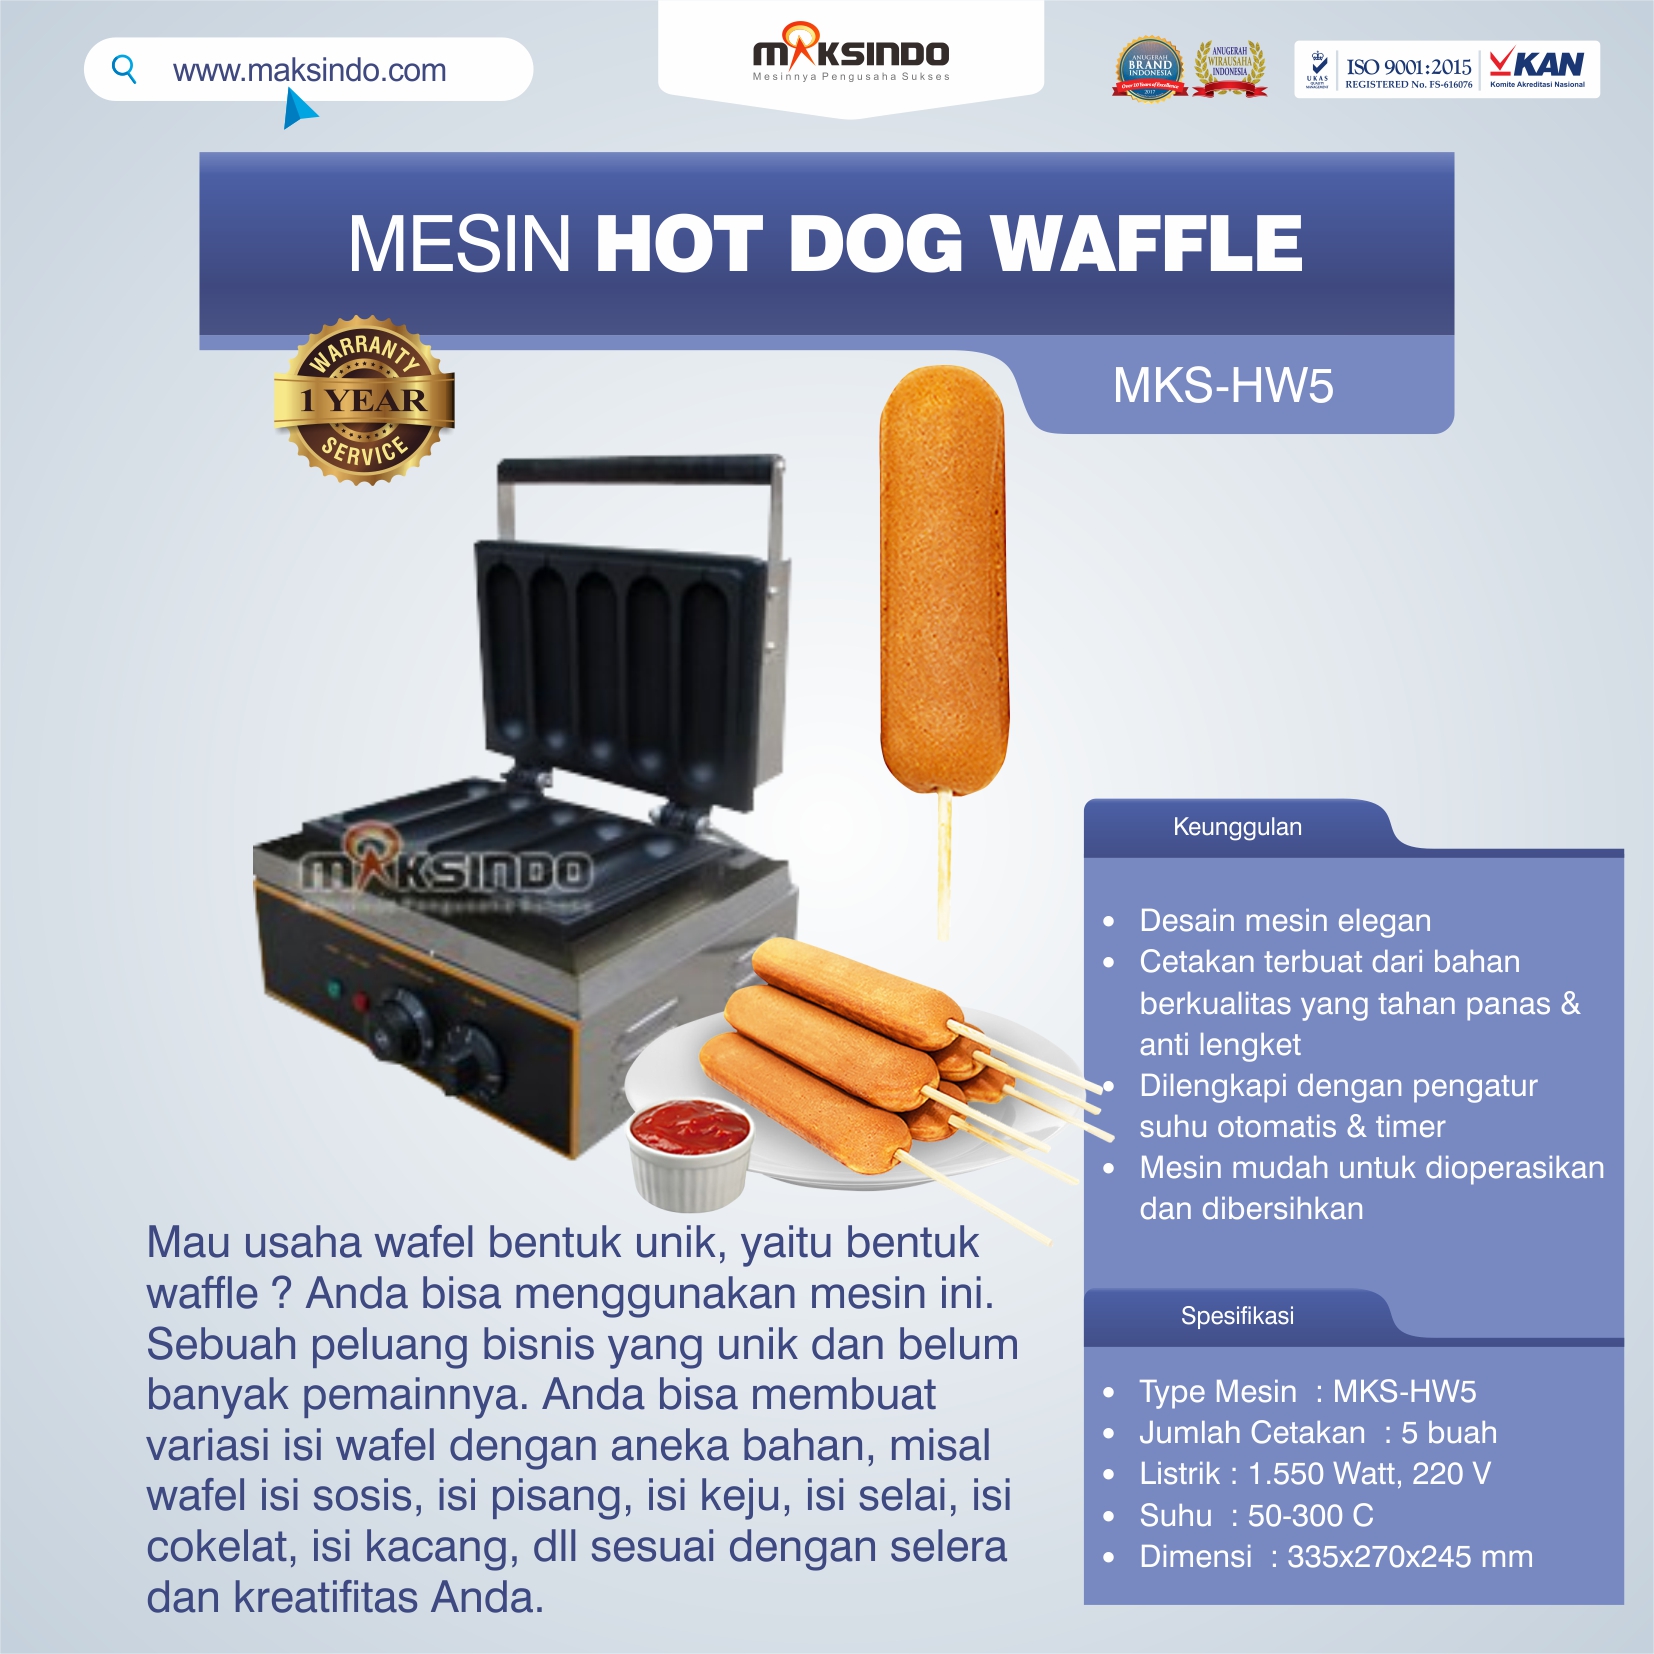 Jual Mesin Hot Dog Waffle MKS-HW5 di Semarang